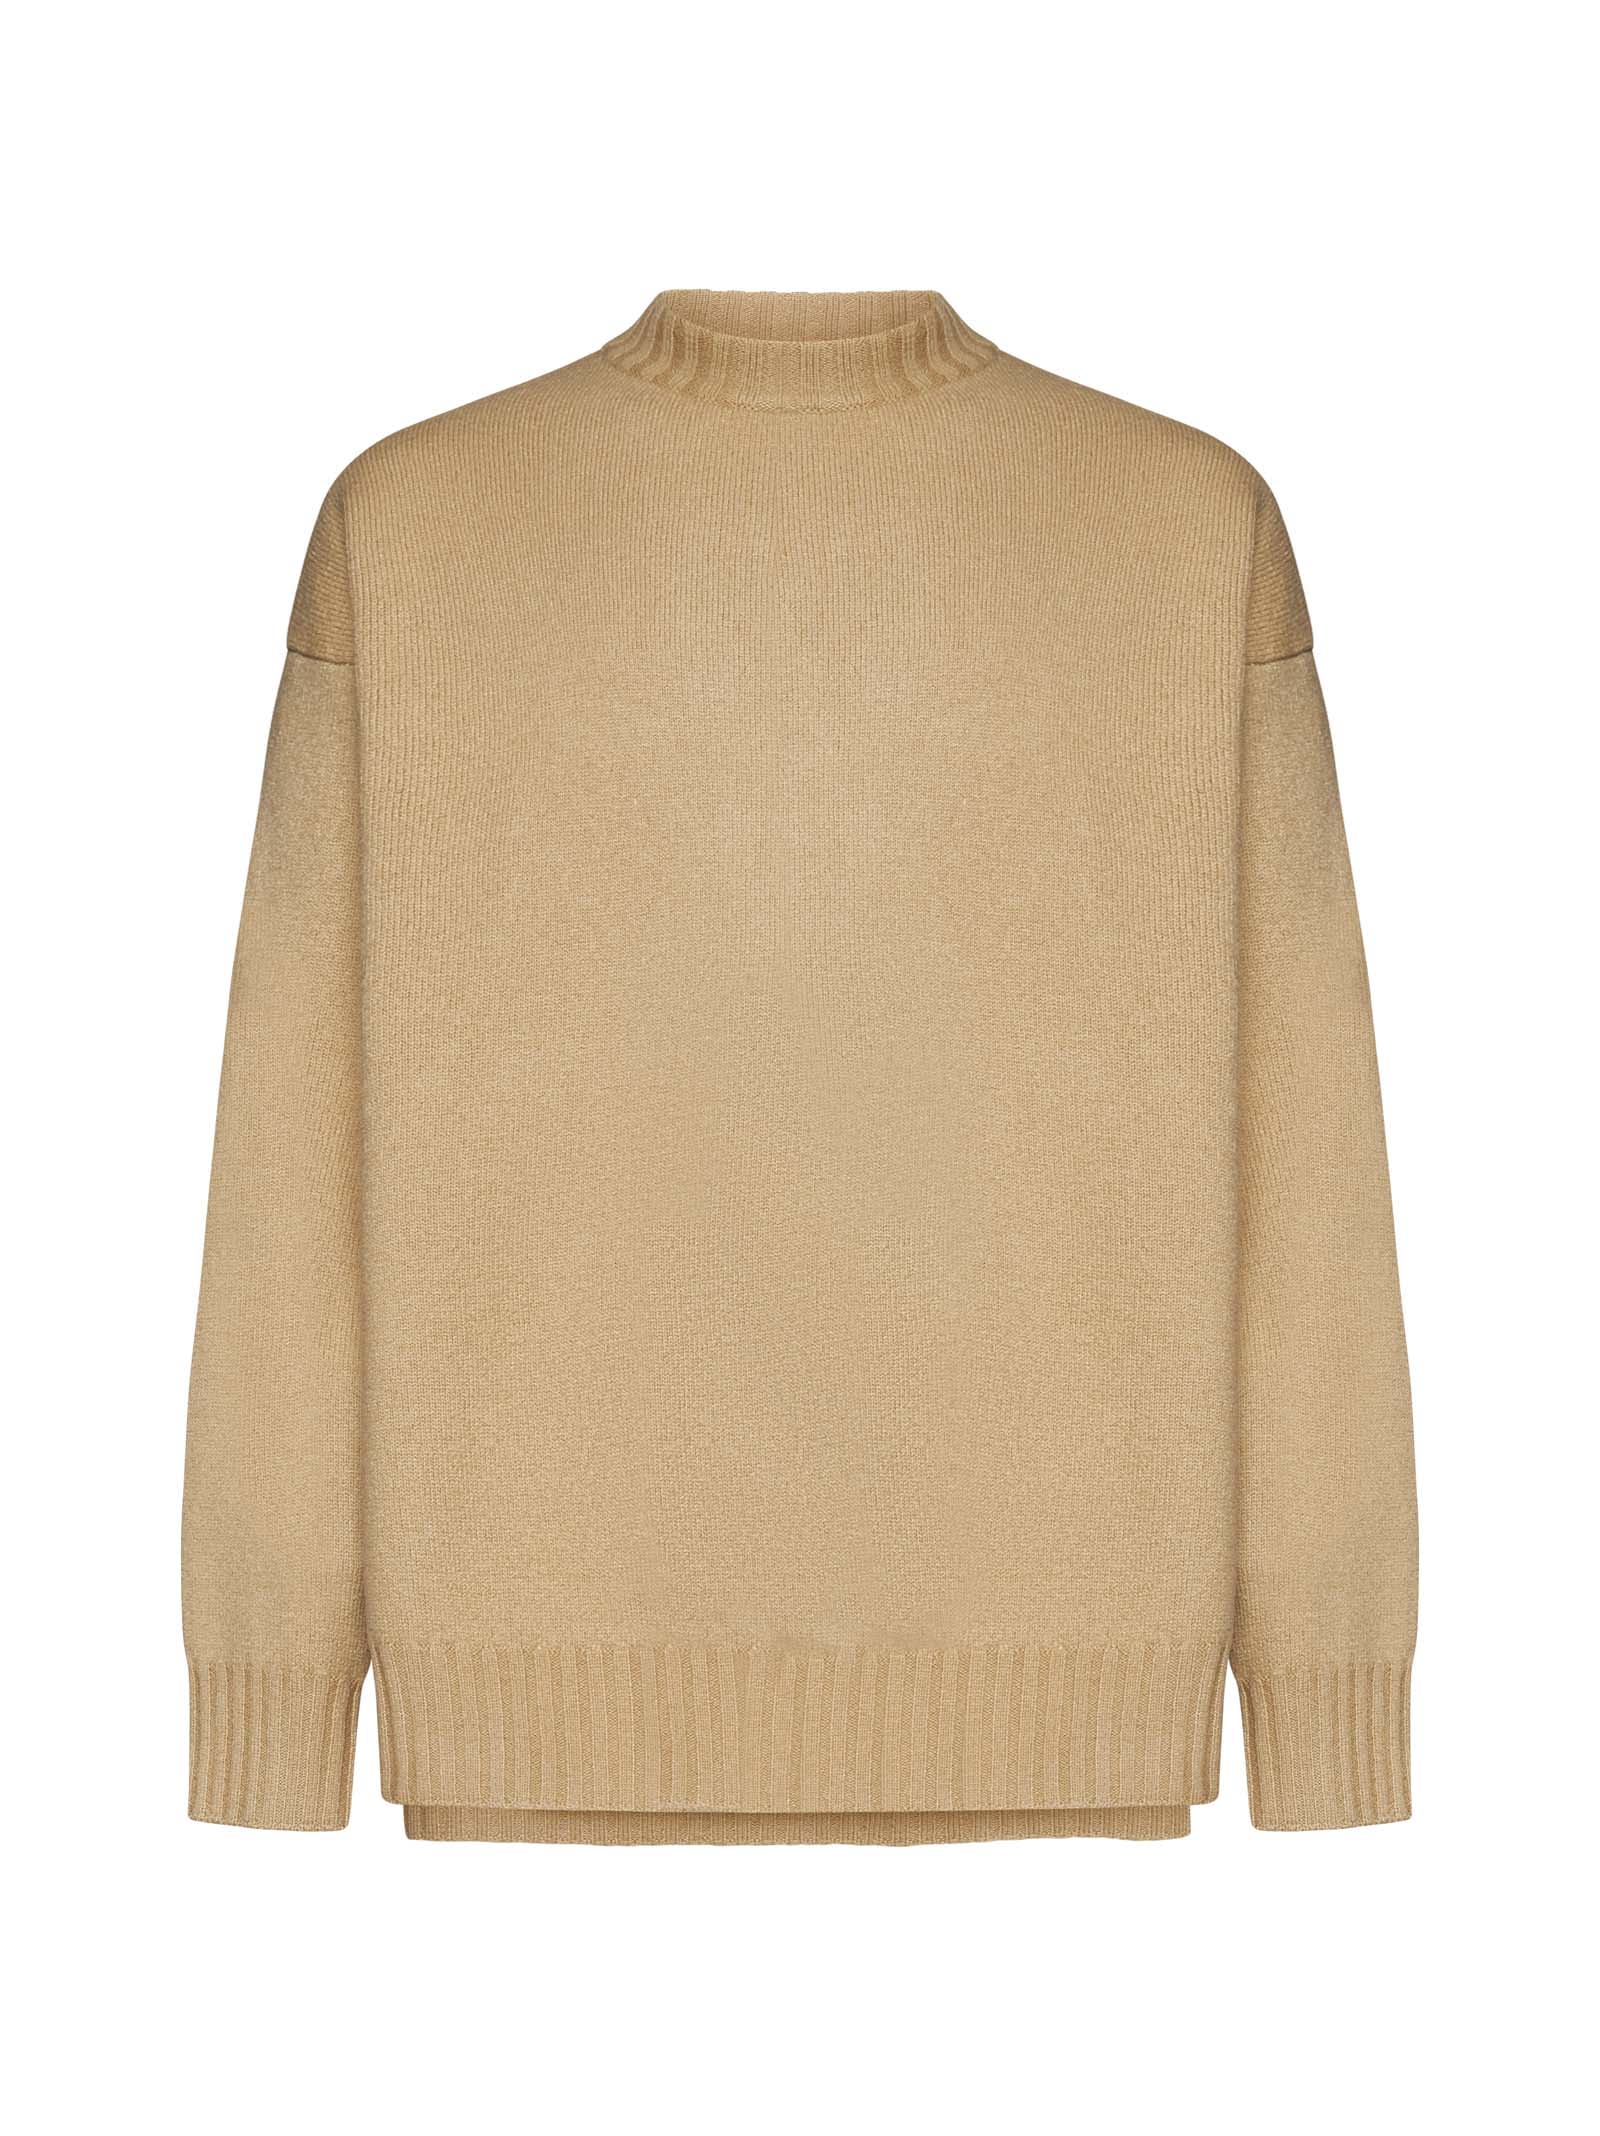 Jil Sander Sweater In Brown